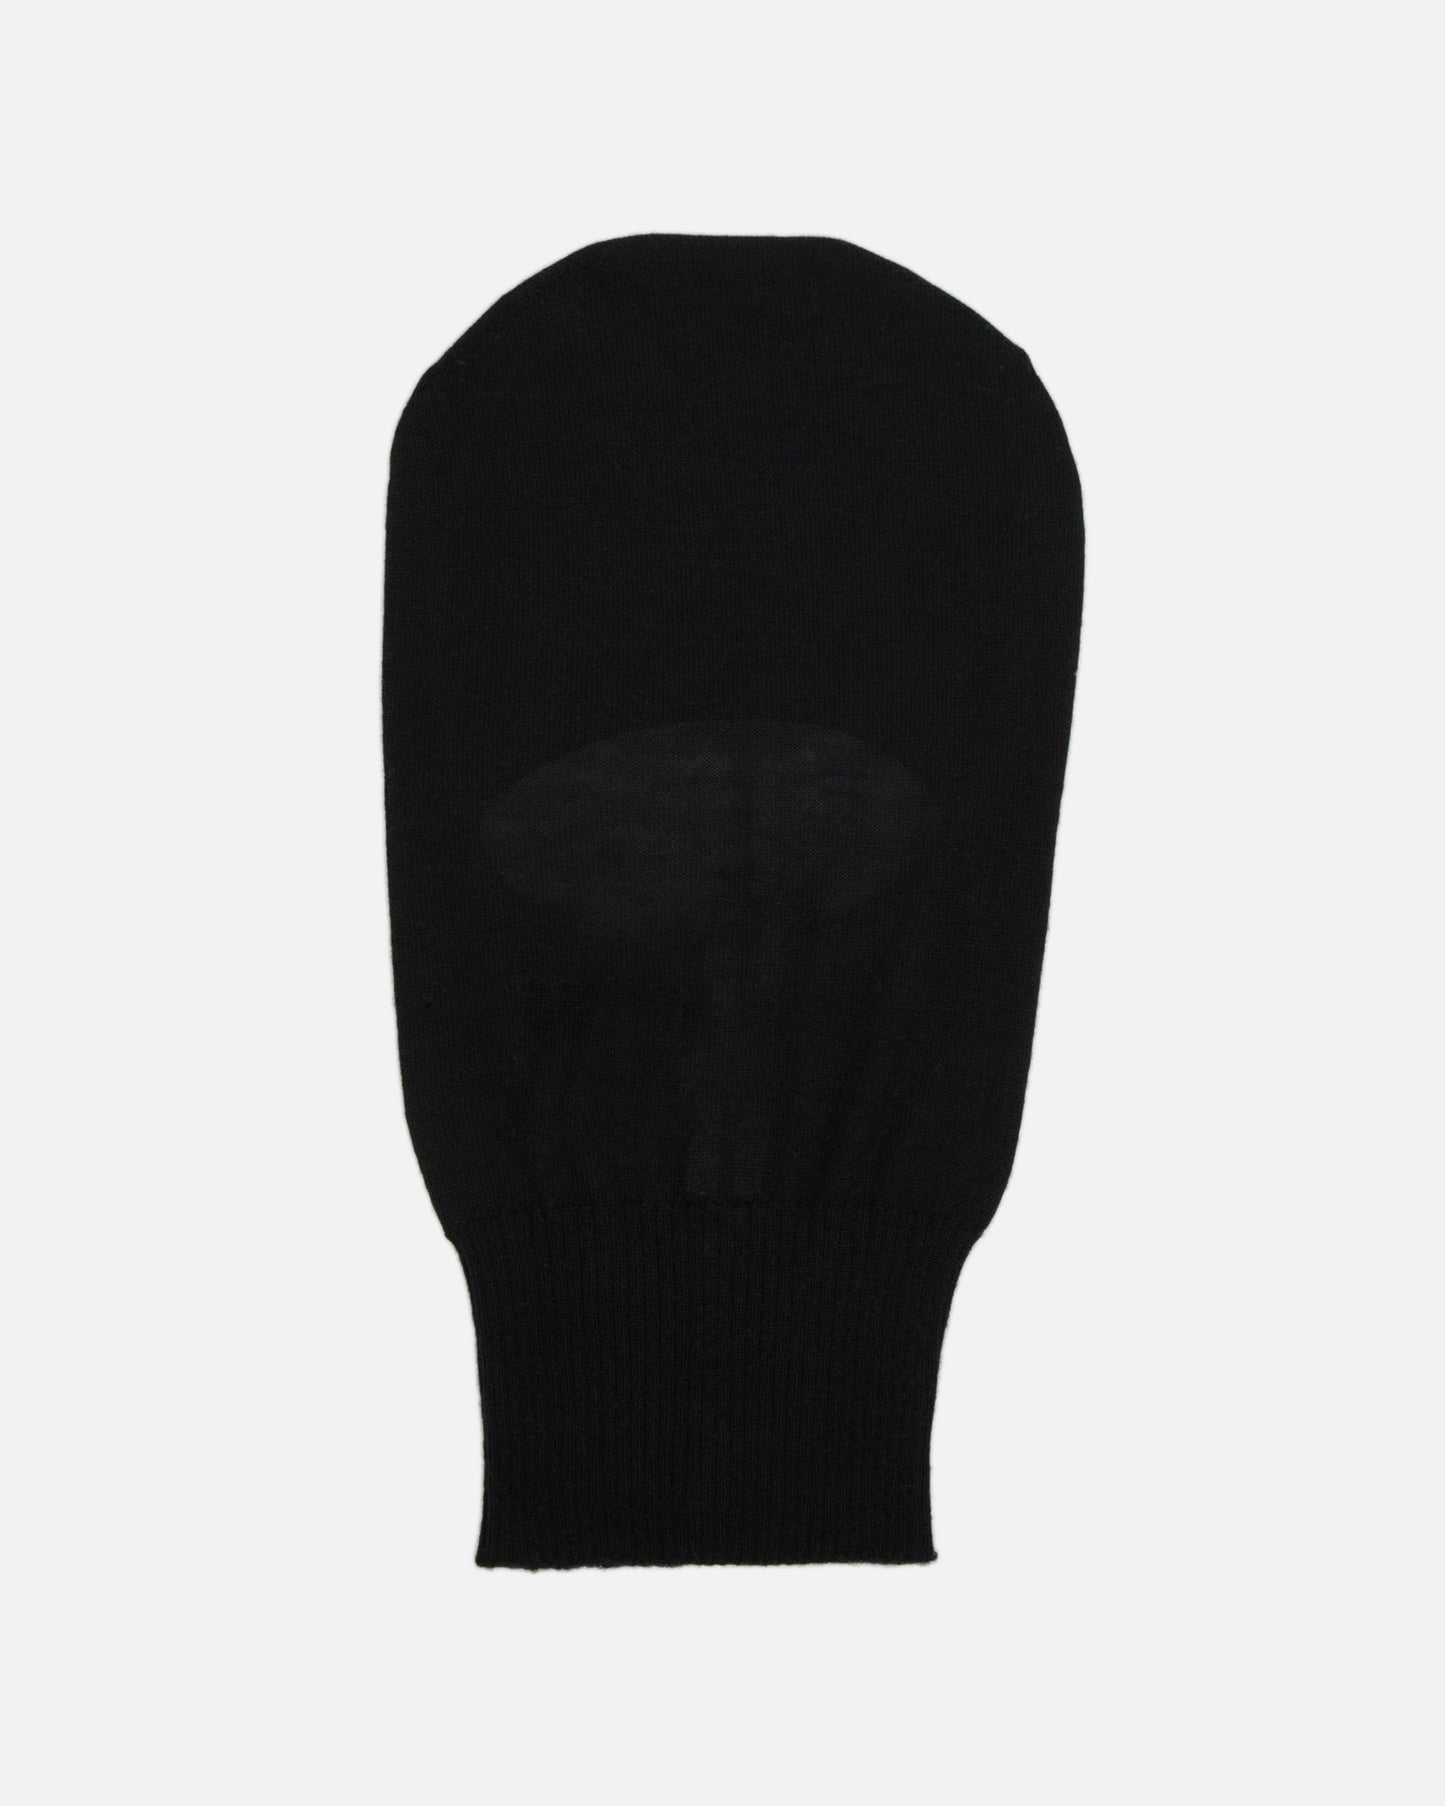 Rick Owens Men's Hats Skull Balaclava in Black